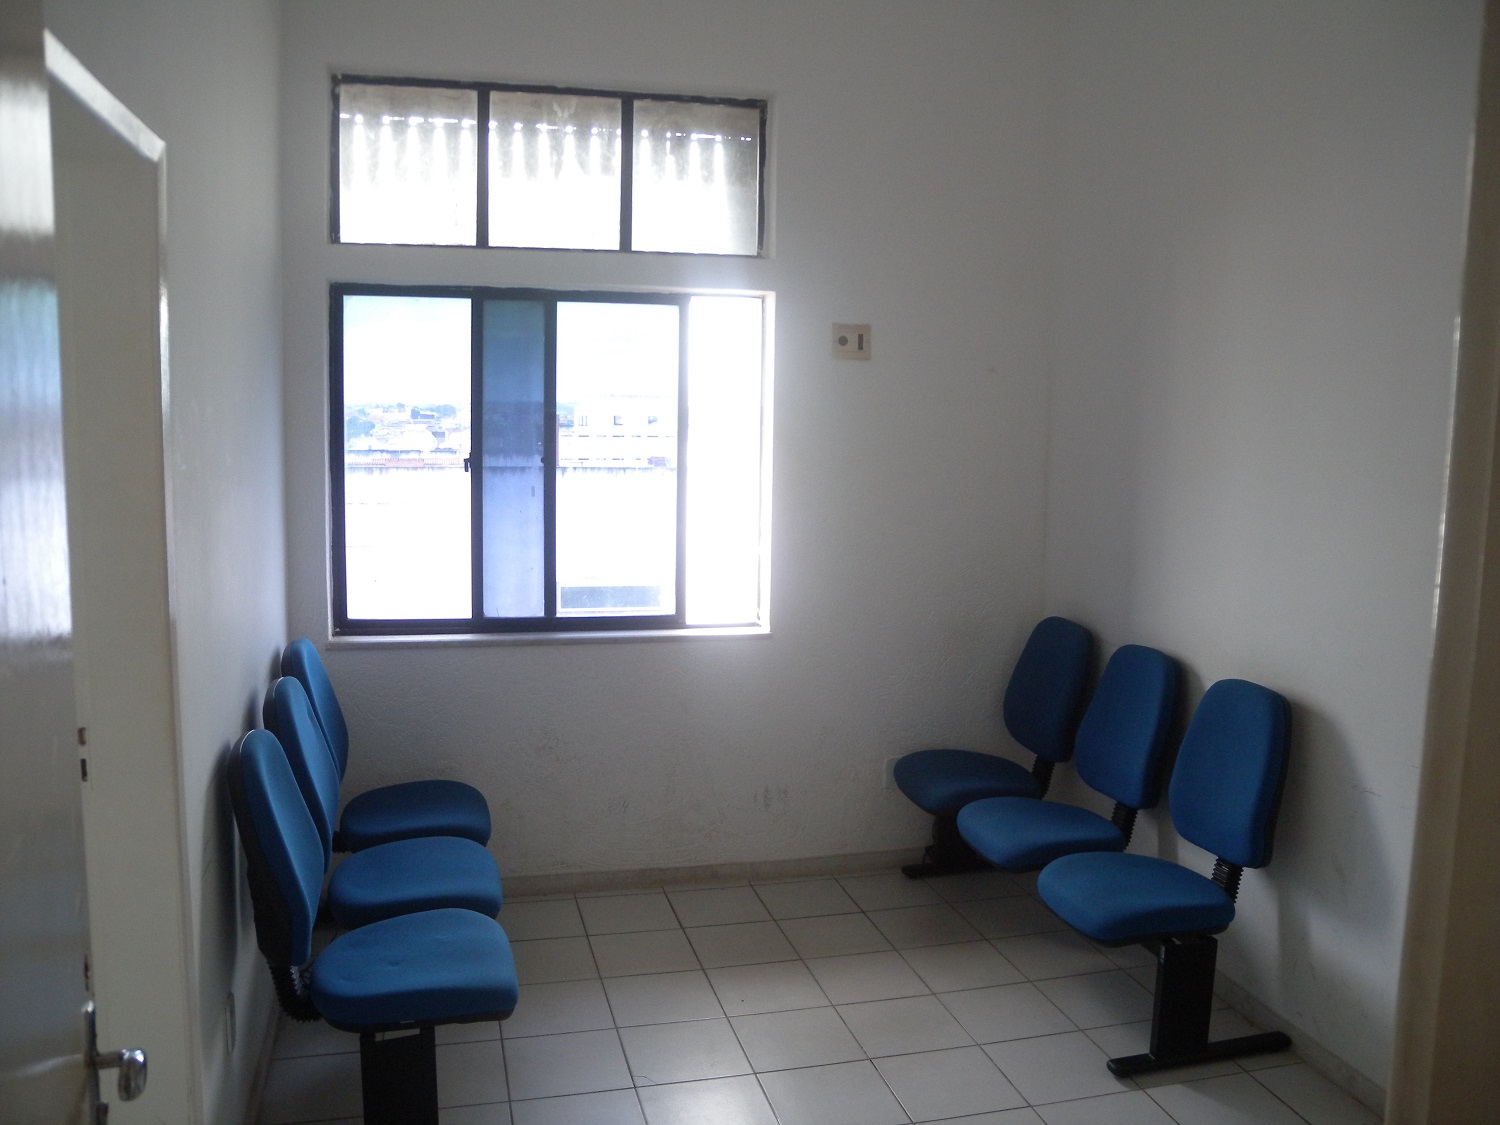 A sala de espera para os pacientes (Foto:Ascom UFS Lagarto)